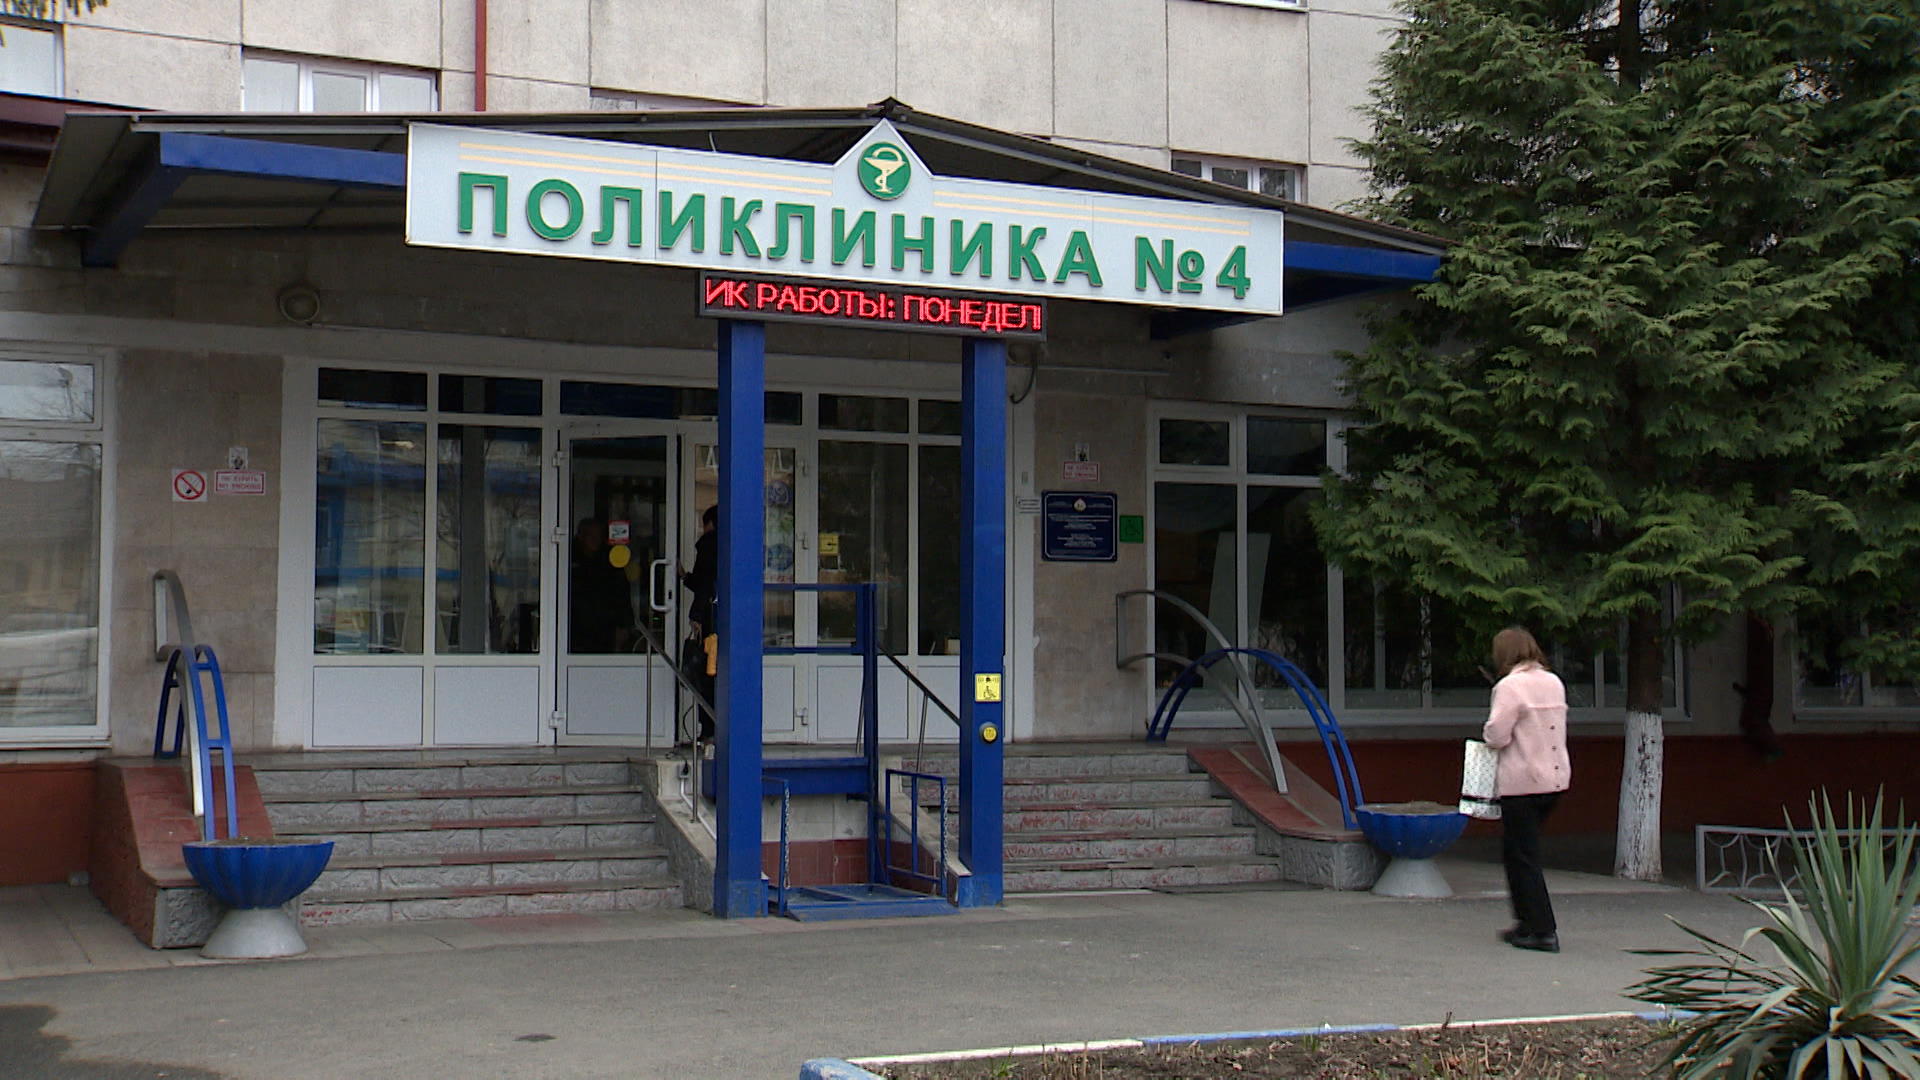 Пять миллионов рублей направят из республиканского бюджета на замену лифтового оборудования в поликлинике №4